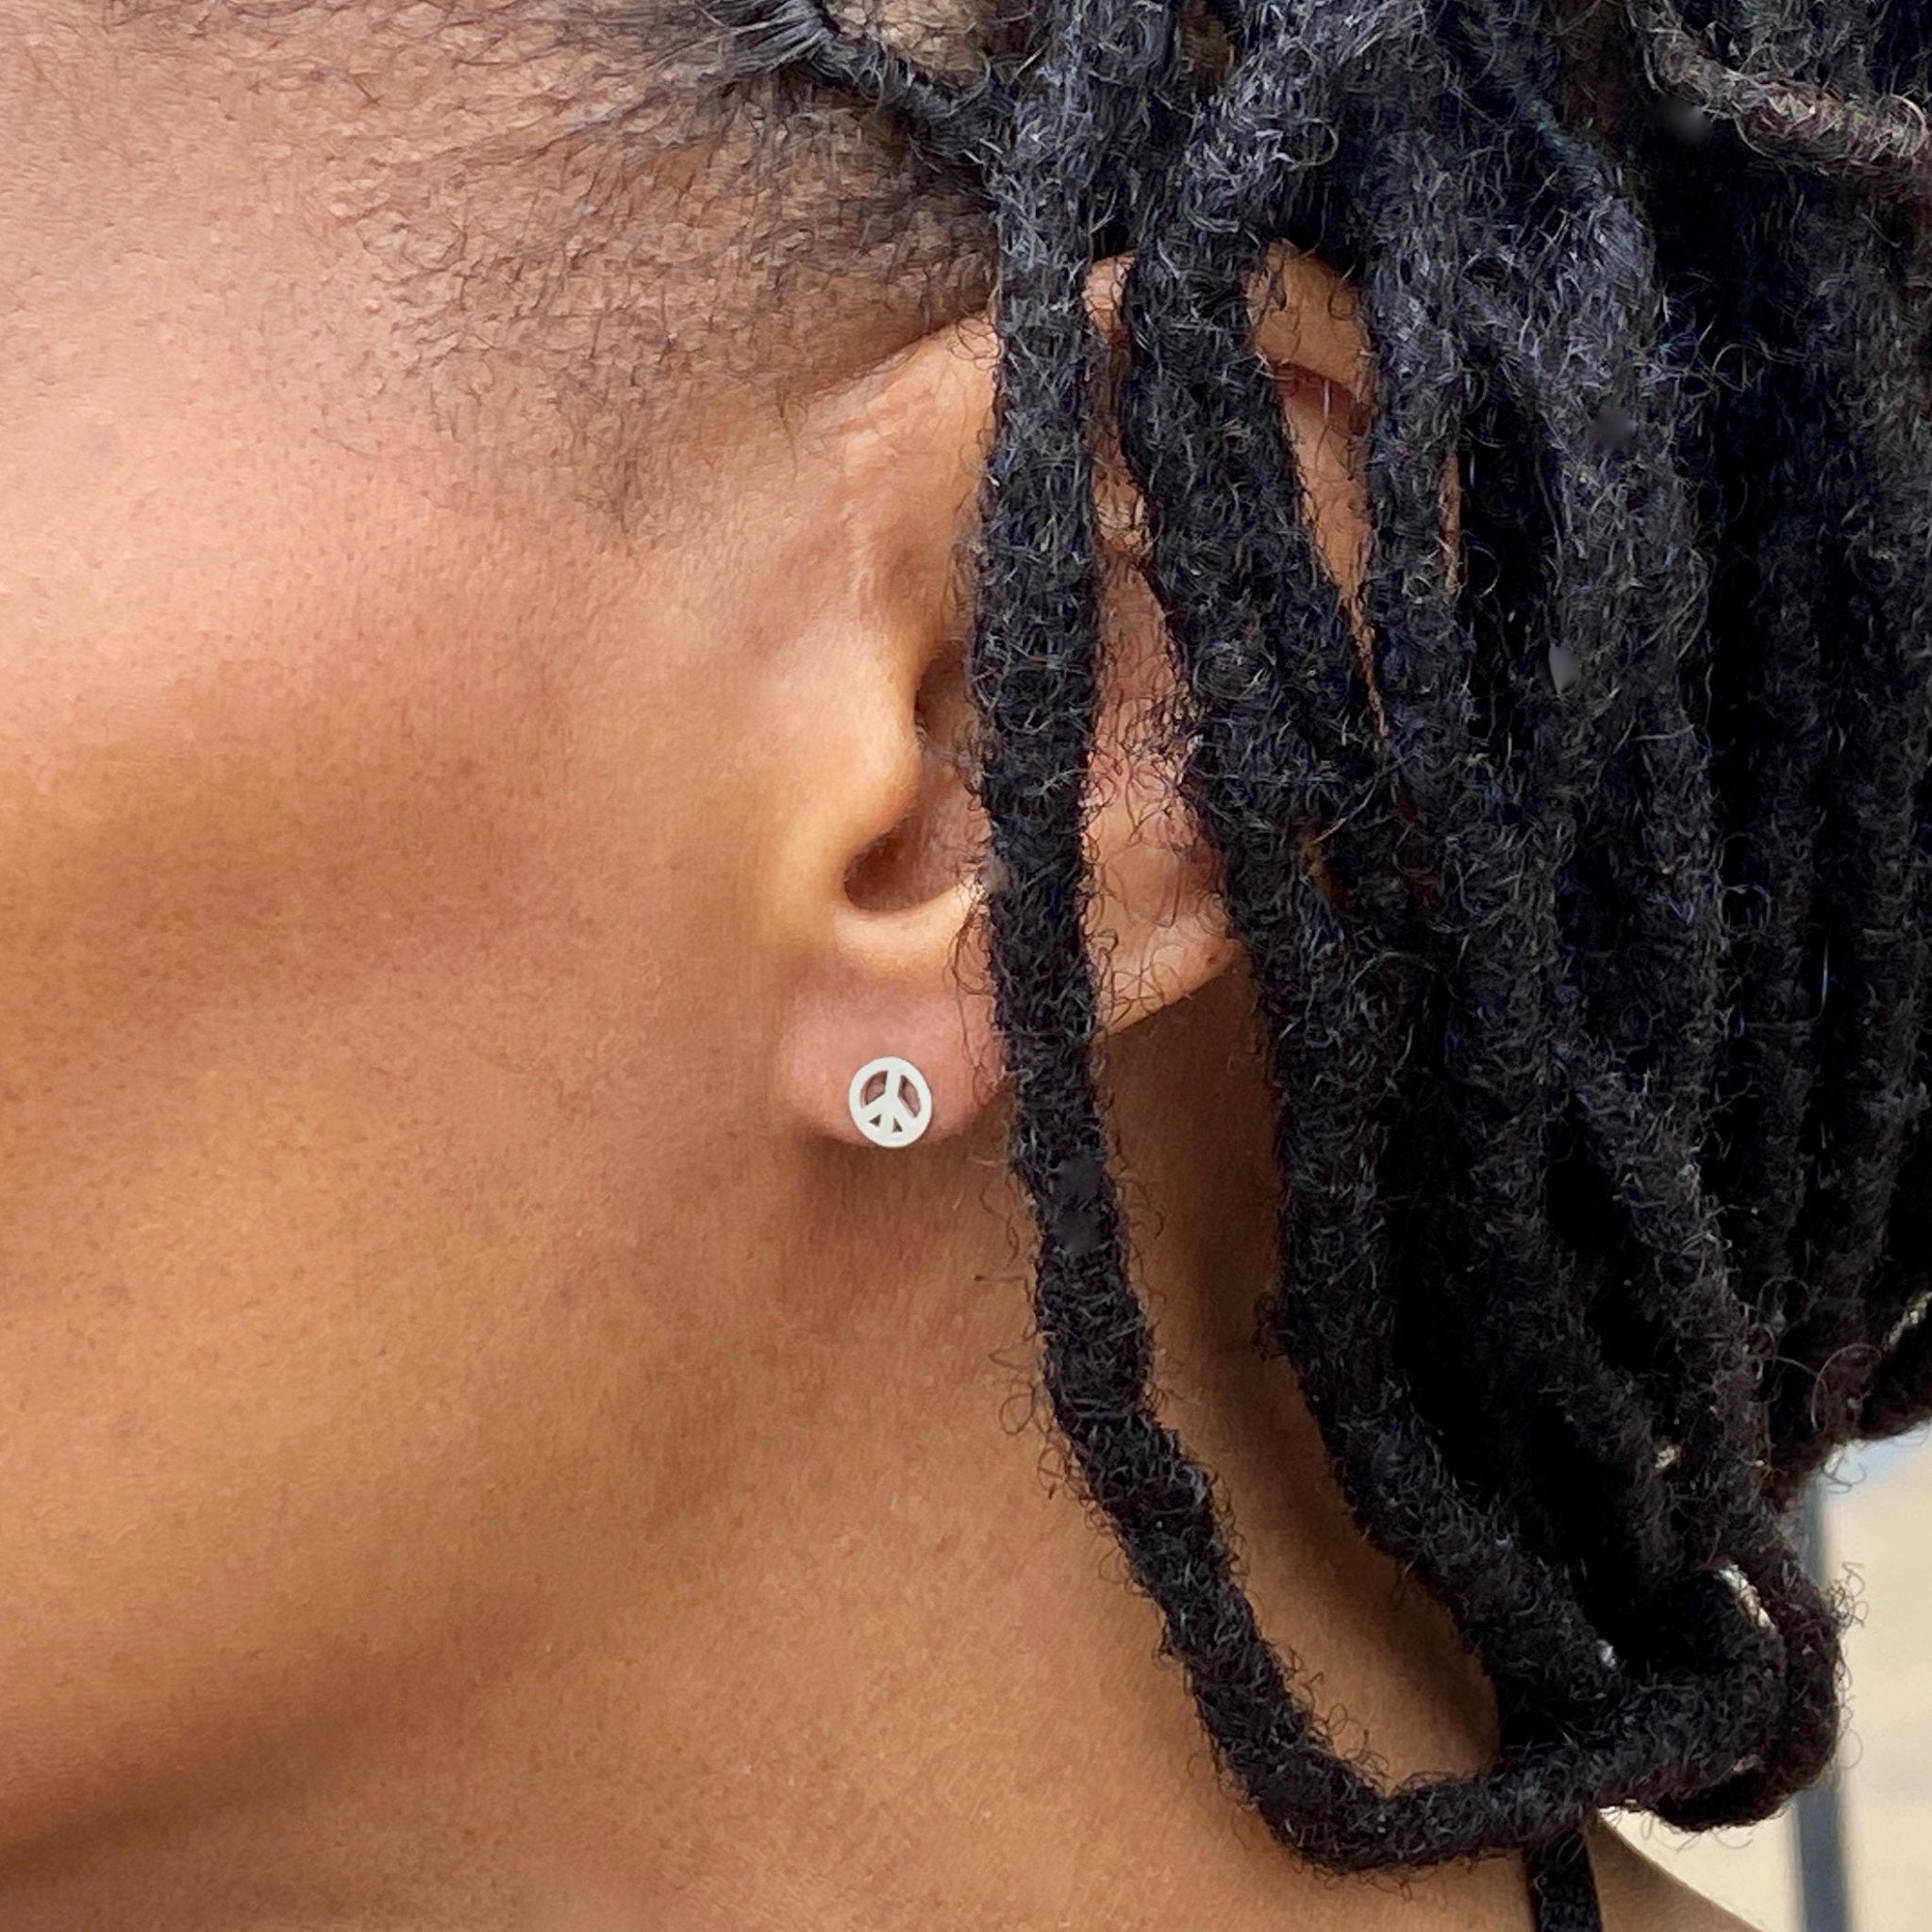 Sterling Silver Peace Symbol Earrings | mazi + zo jewelry